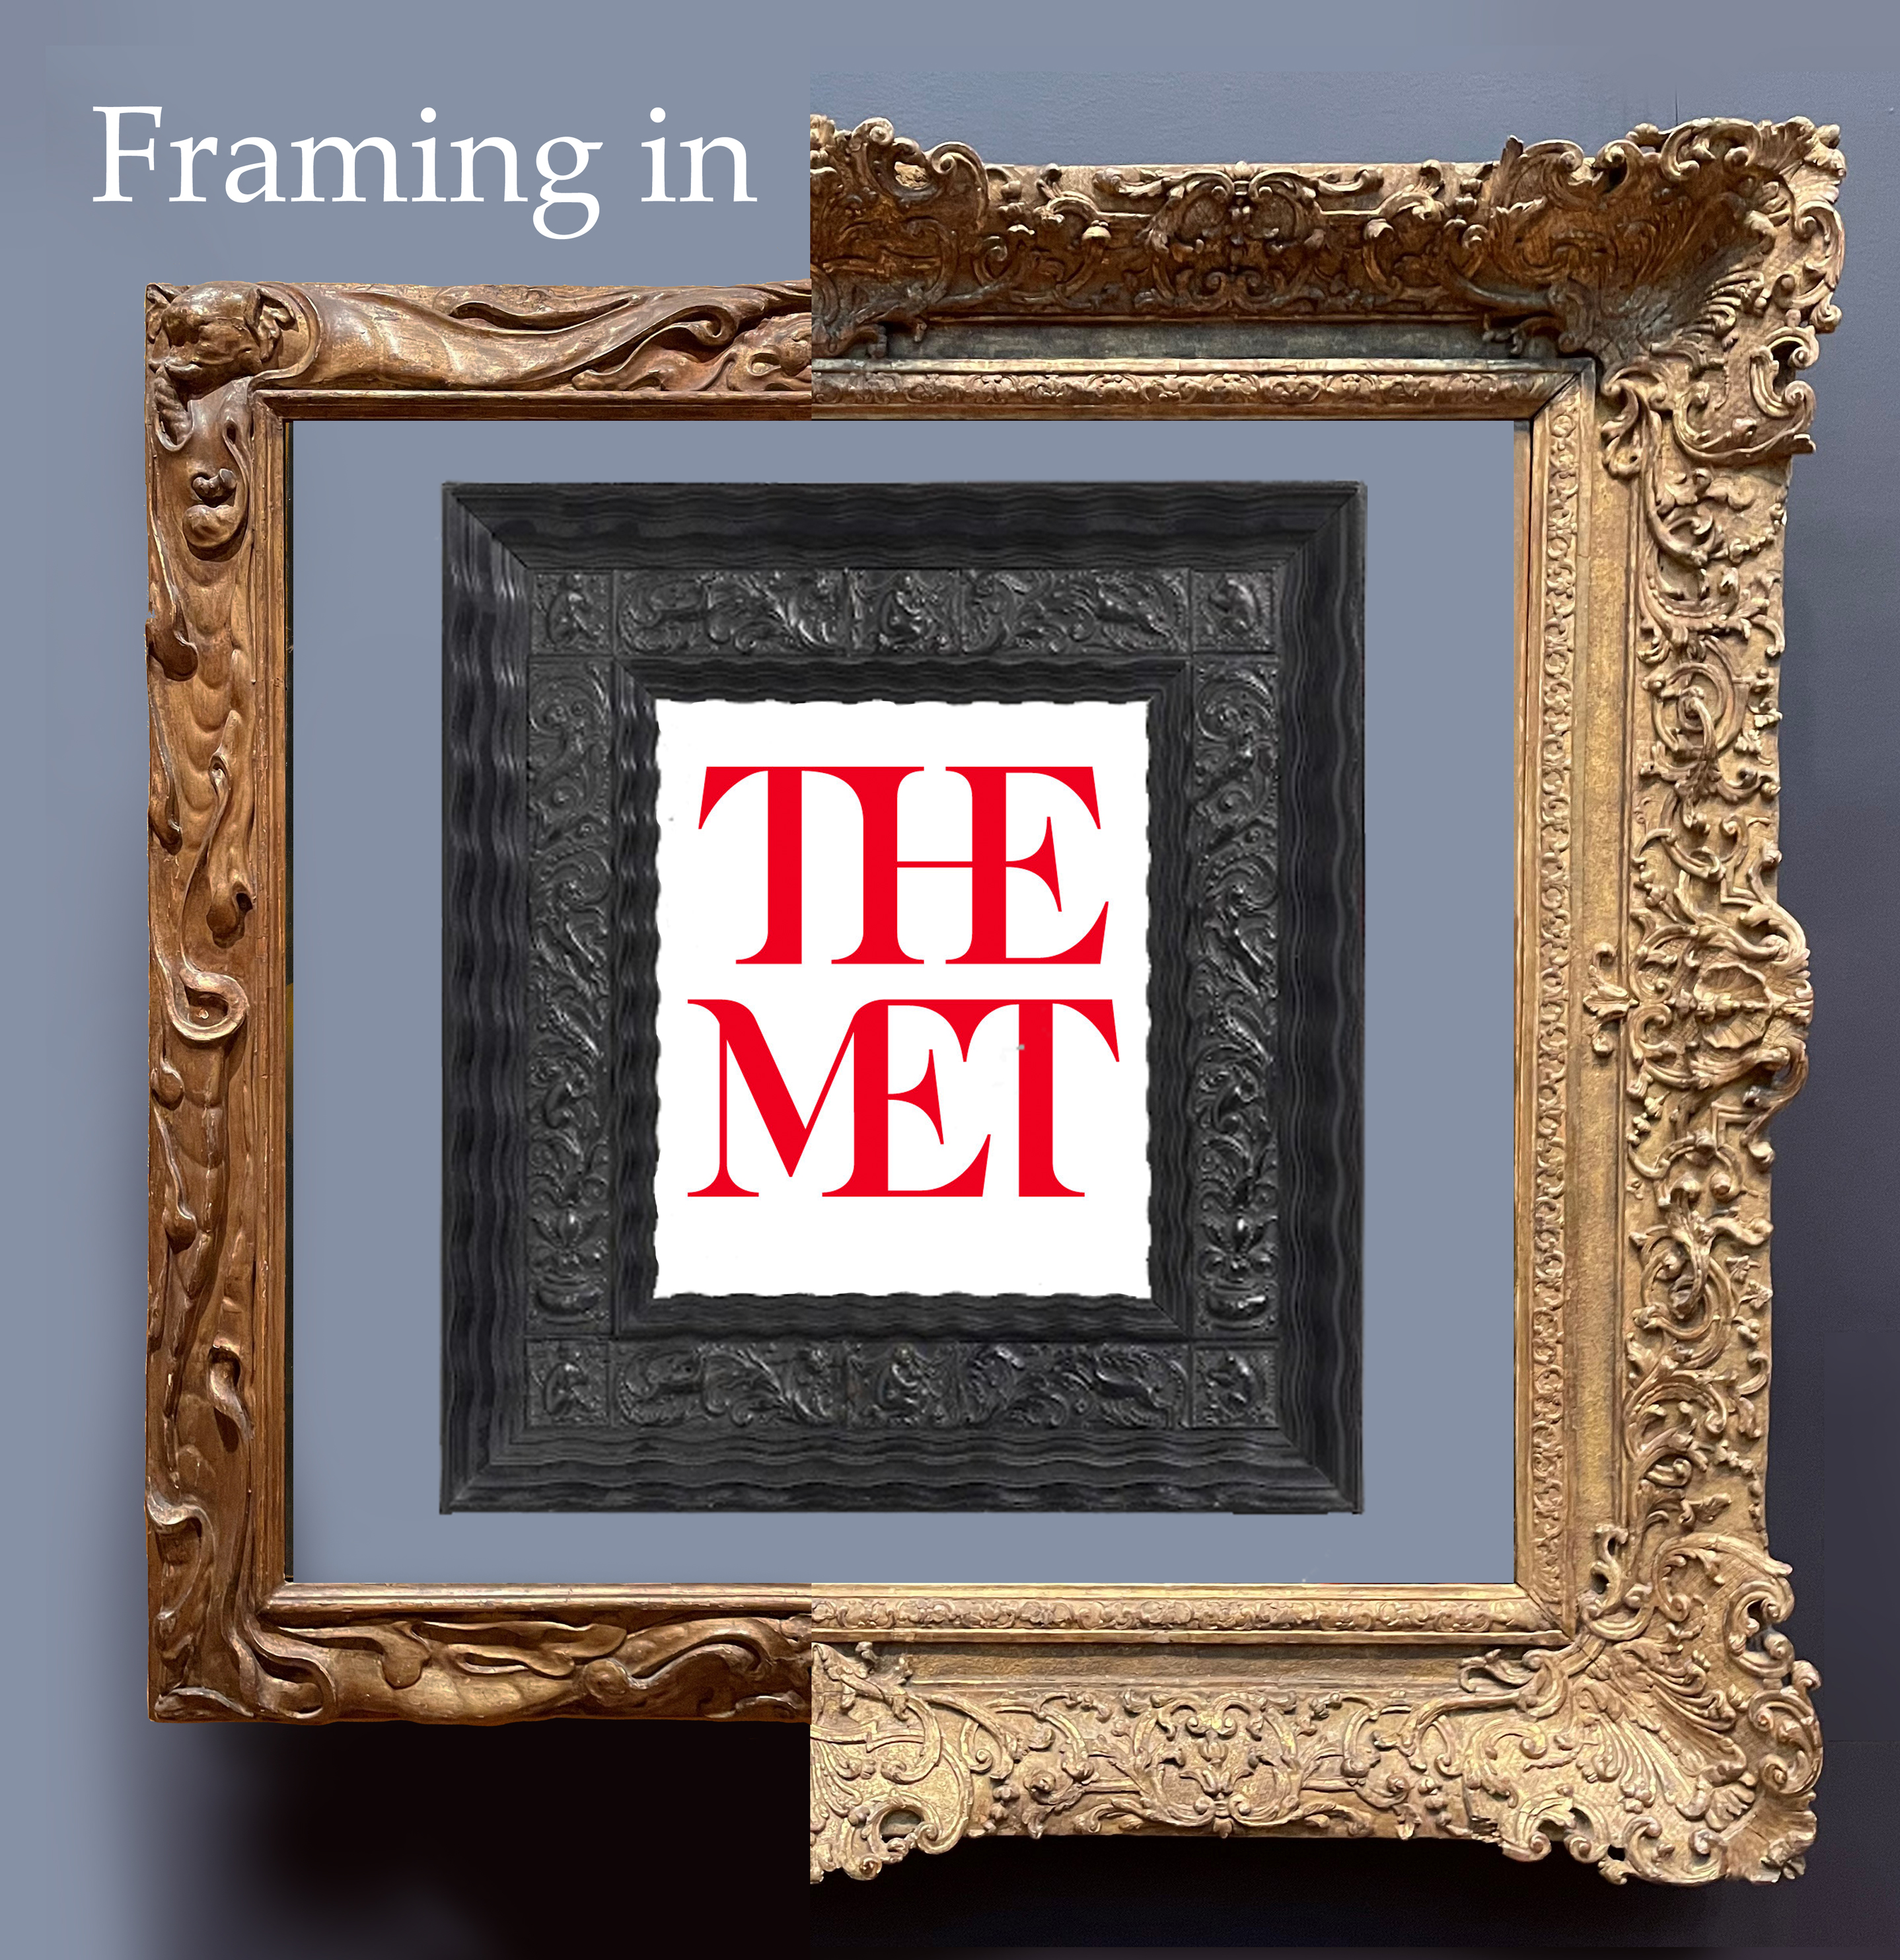 Framing the European paintings at The Metropolitan Museum: Part 1